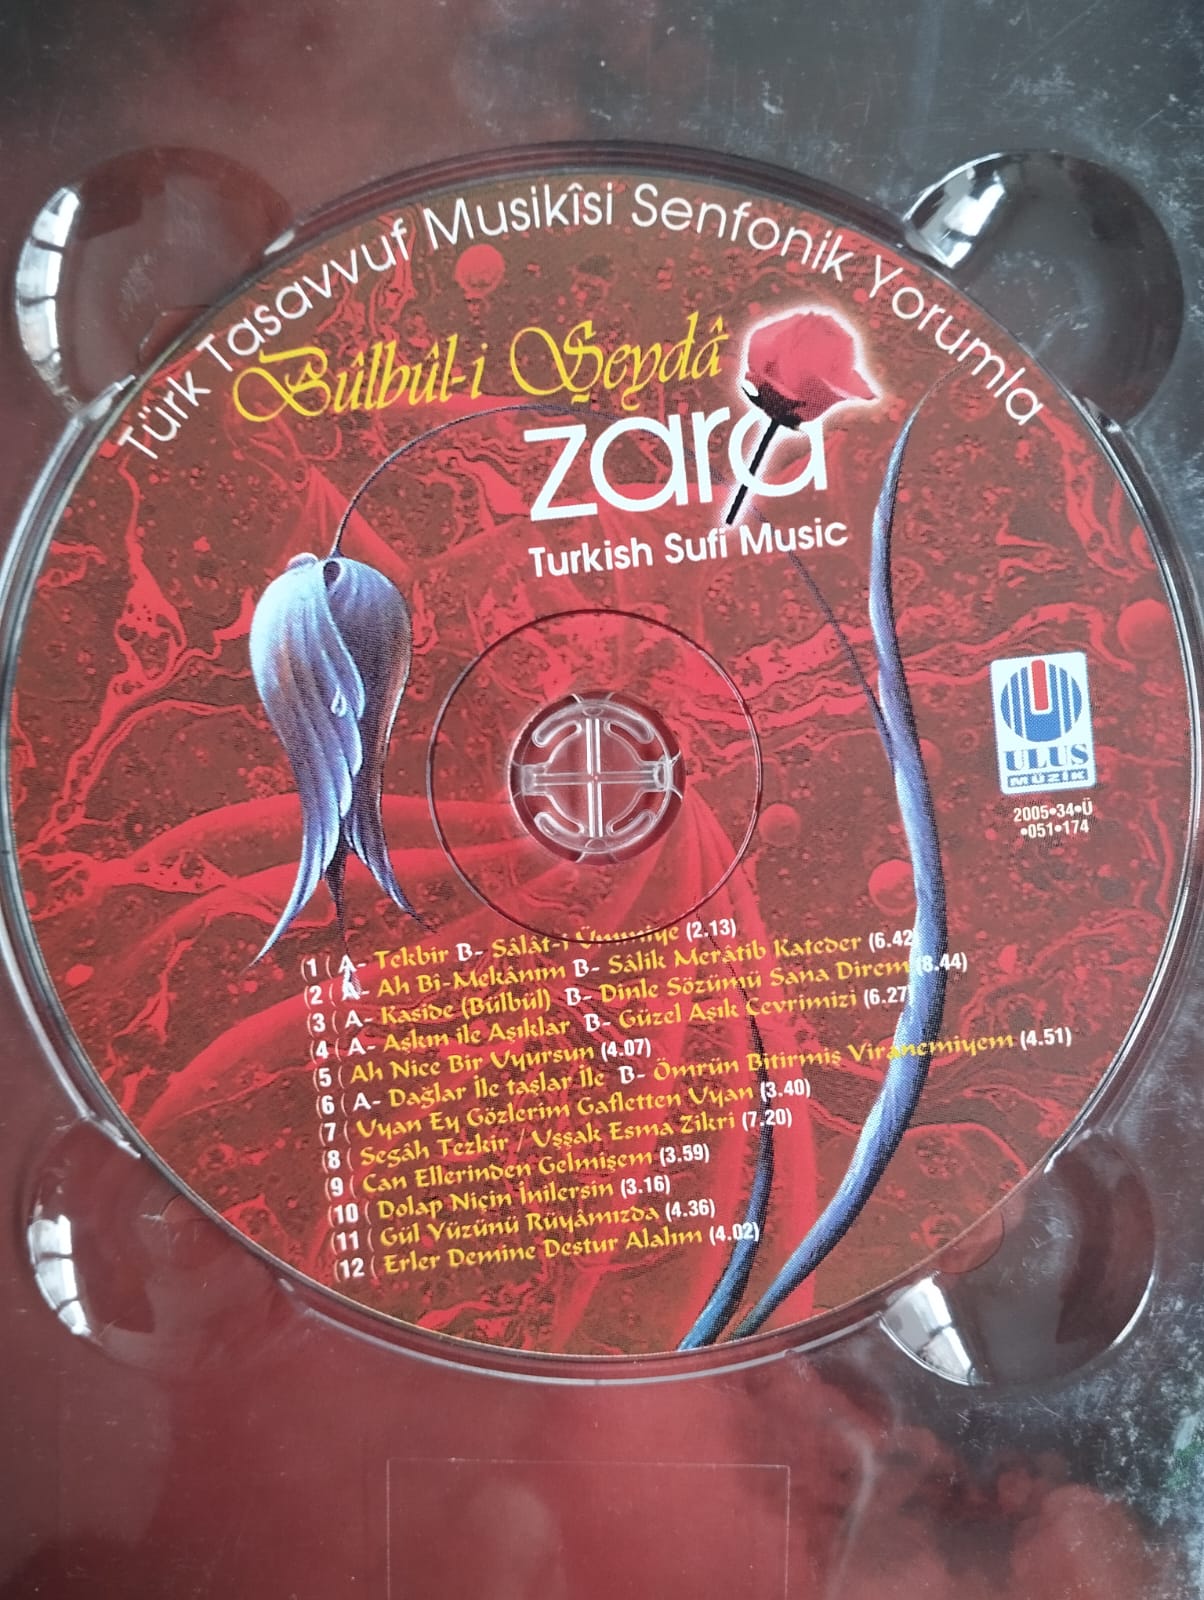 Zara  ‎– Bûlbûl-i Şeydâ (Türk Tasavvuf Musikîsi Senfonik Yorumla) -Türkiye Basım - 2. El CD Albüm